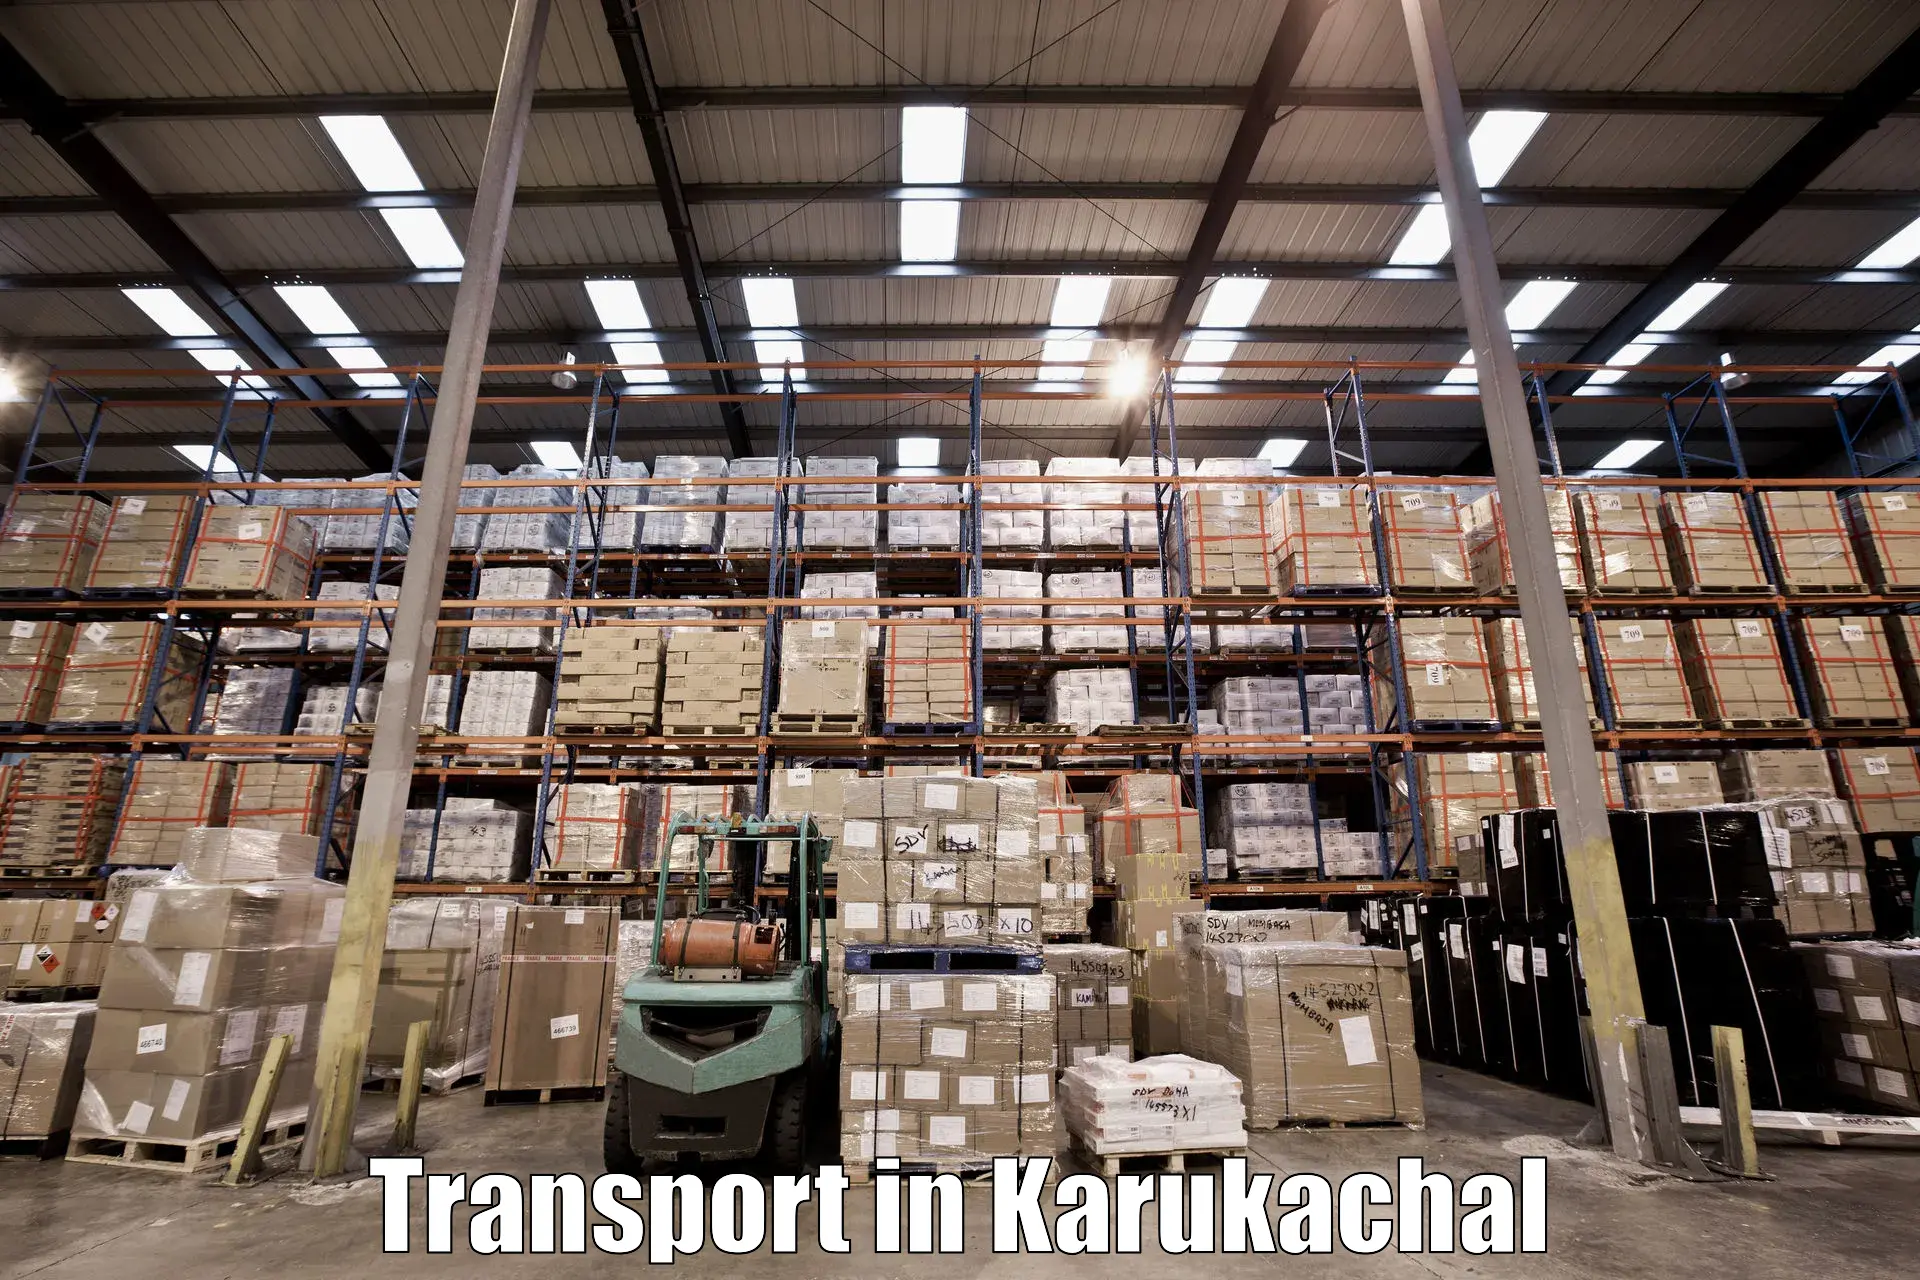 Transport services in Karukachal